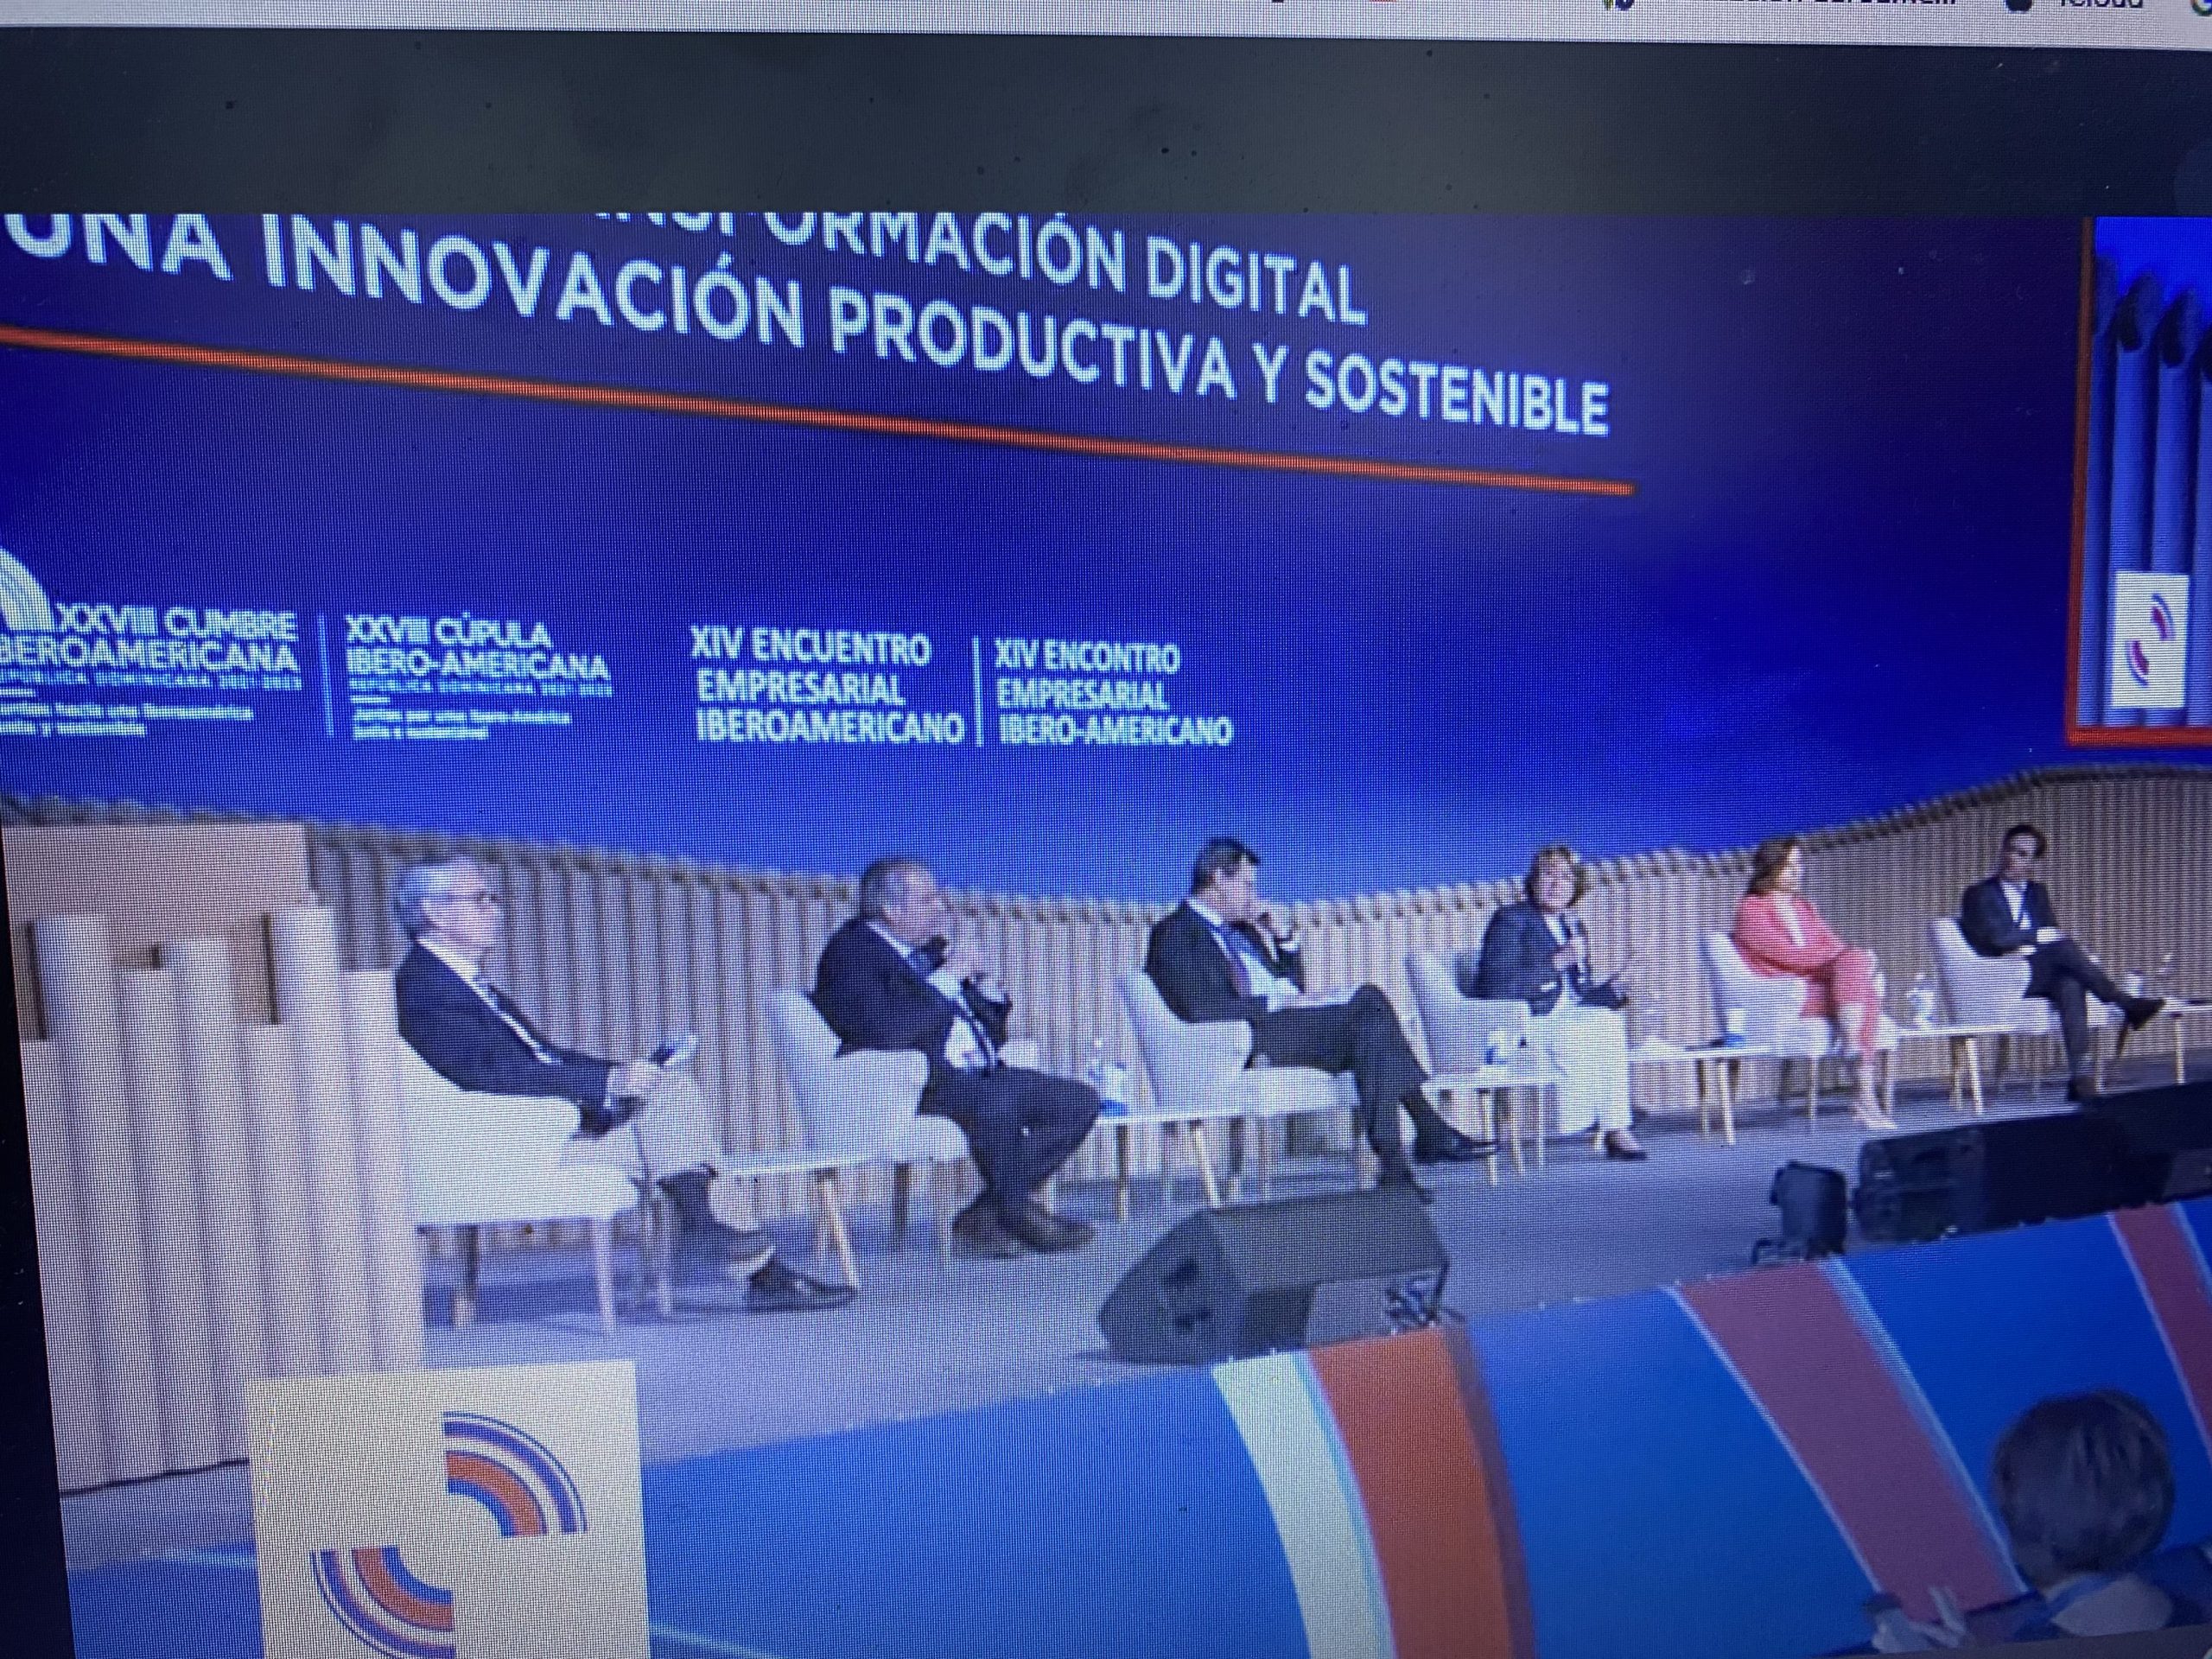 Conectividad y transformación digital para una innovación productiva y sostenible.